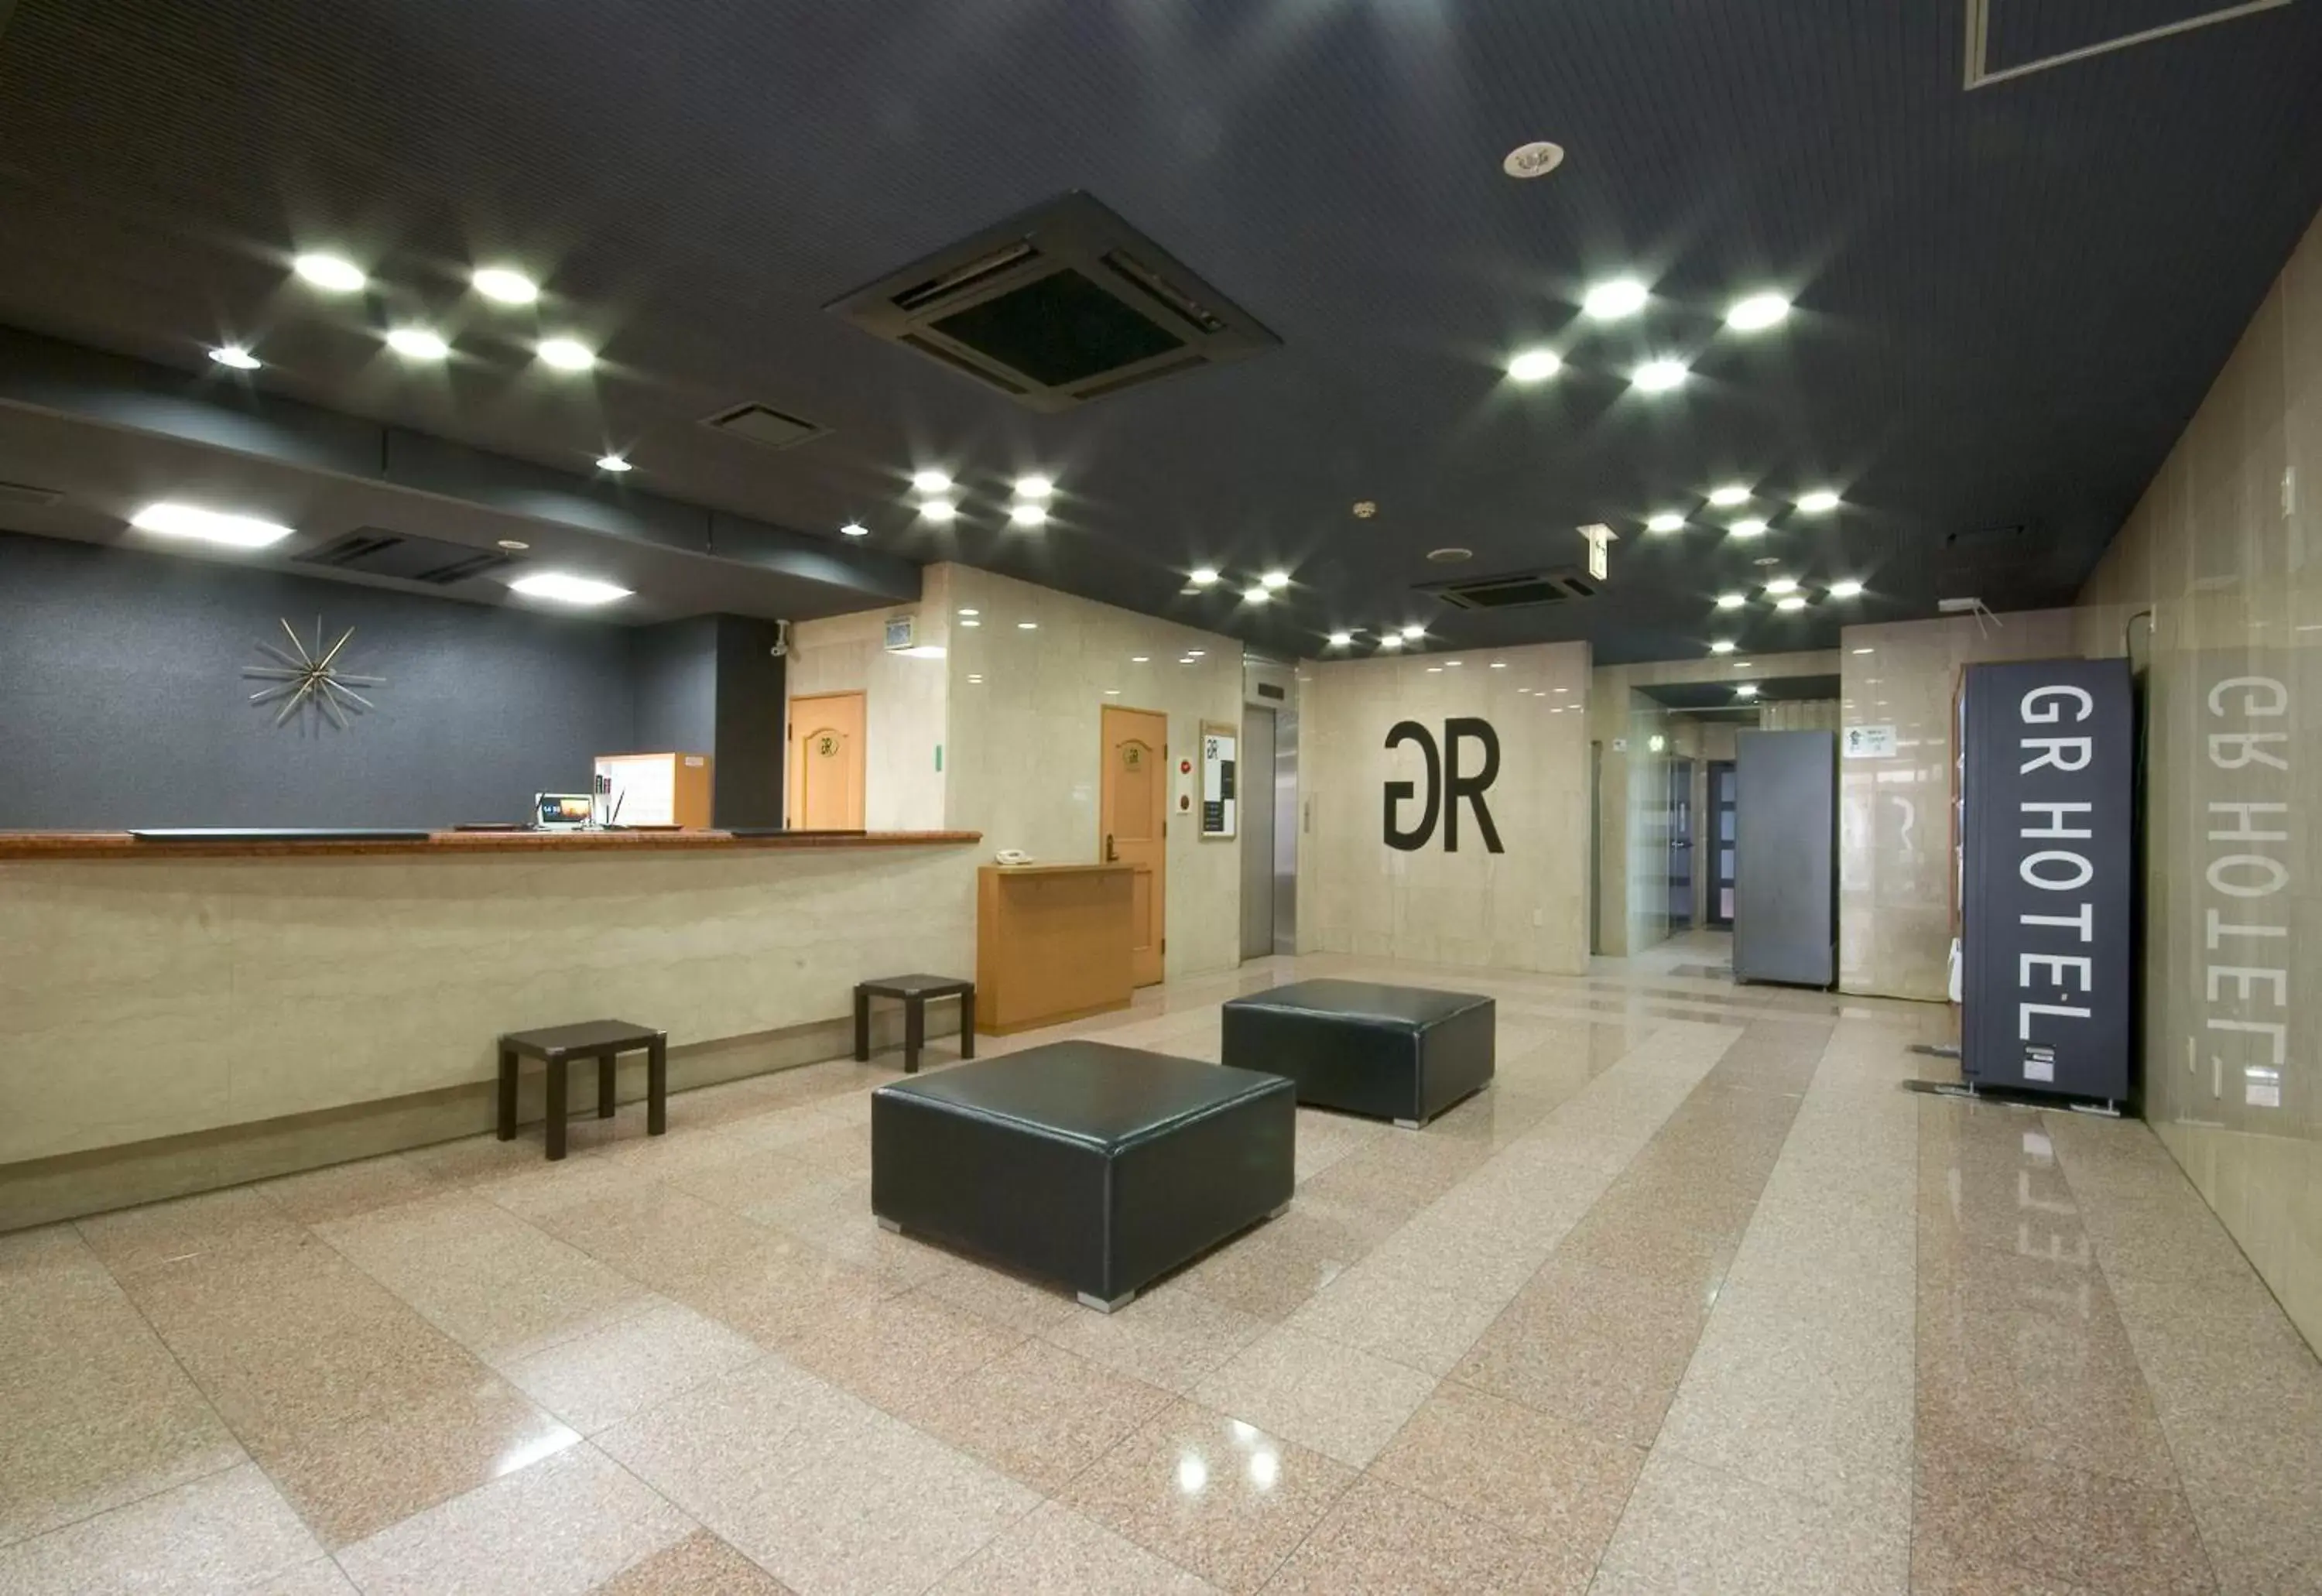 Lobby or reception, Lobby/Reception in GR Hotel Suidocho